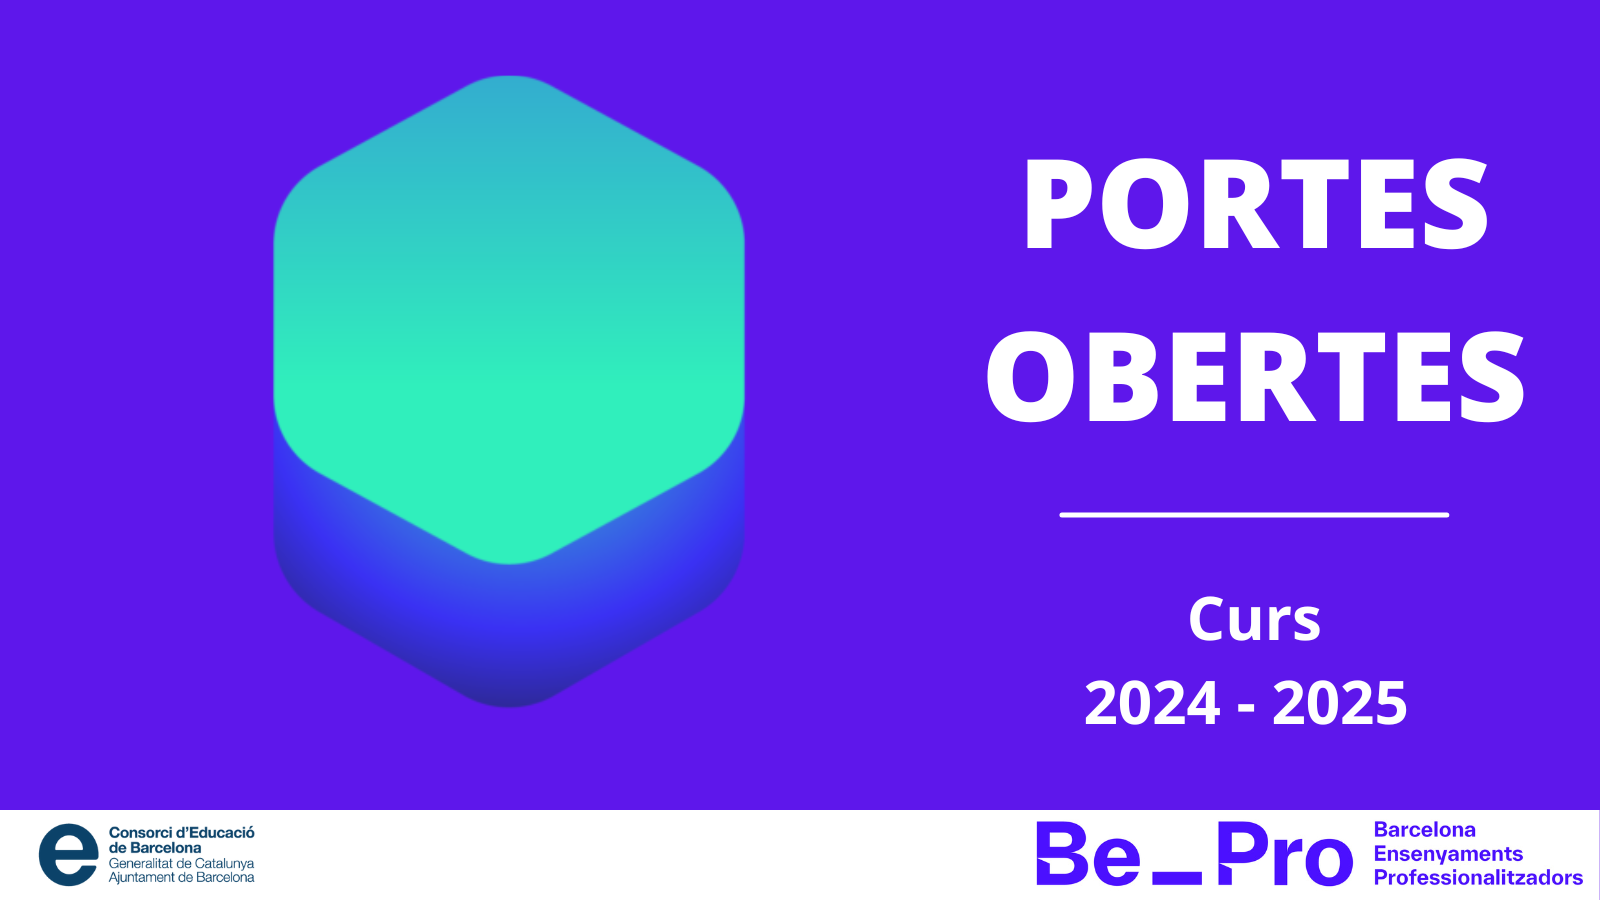 PORTES OBERTES 2024 - 2025